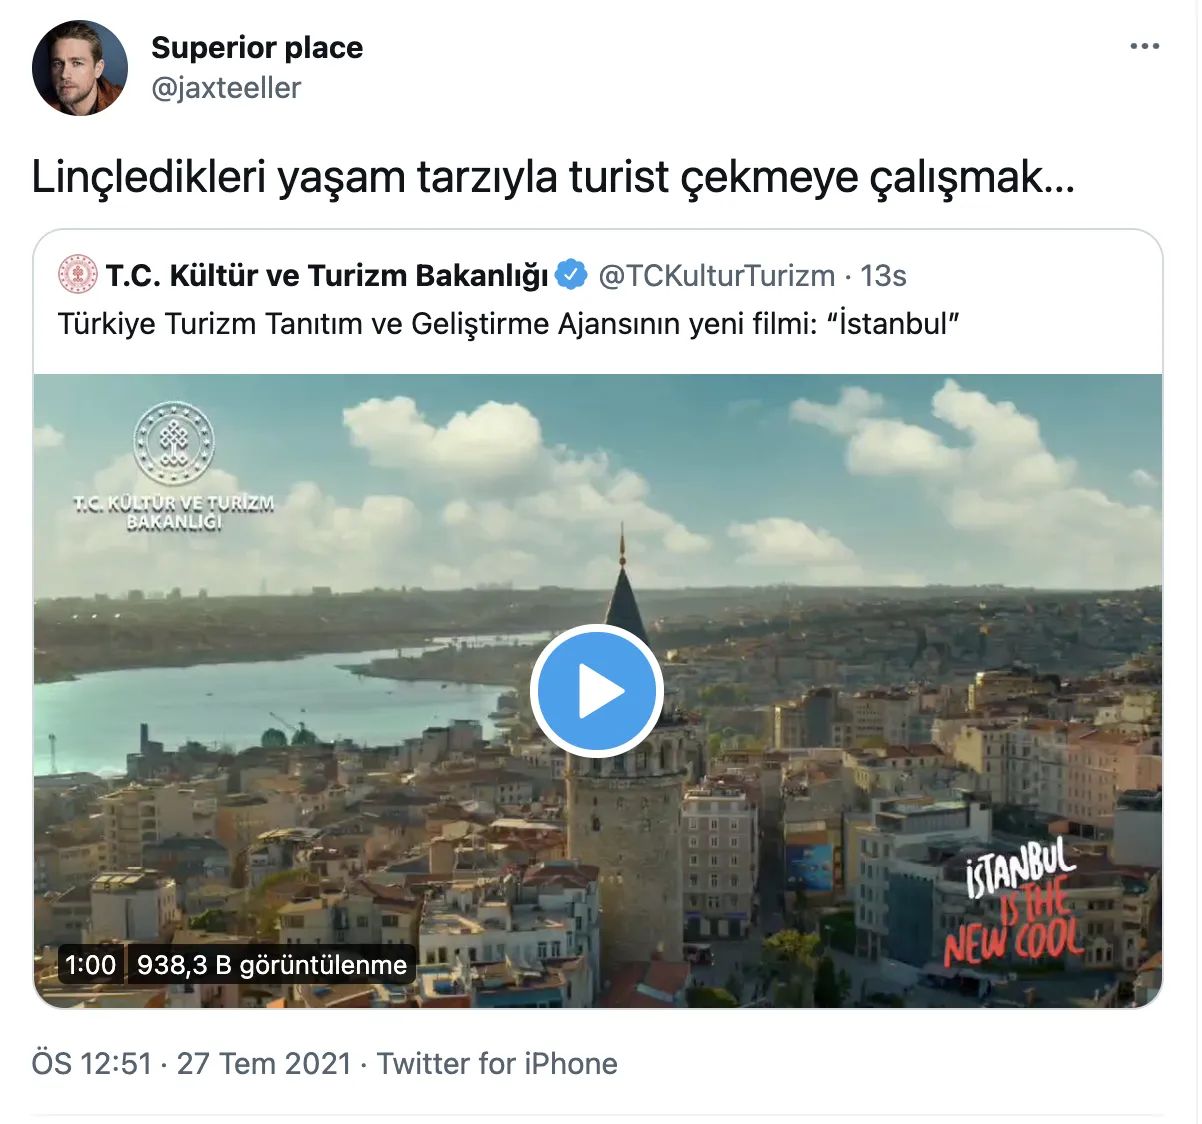 Turizm Bakanlığı'nın 'İstanbul' filmine tepki: "Linçledikleri yaşam tarzıyla turistlere reklam yapıyorlar!"